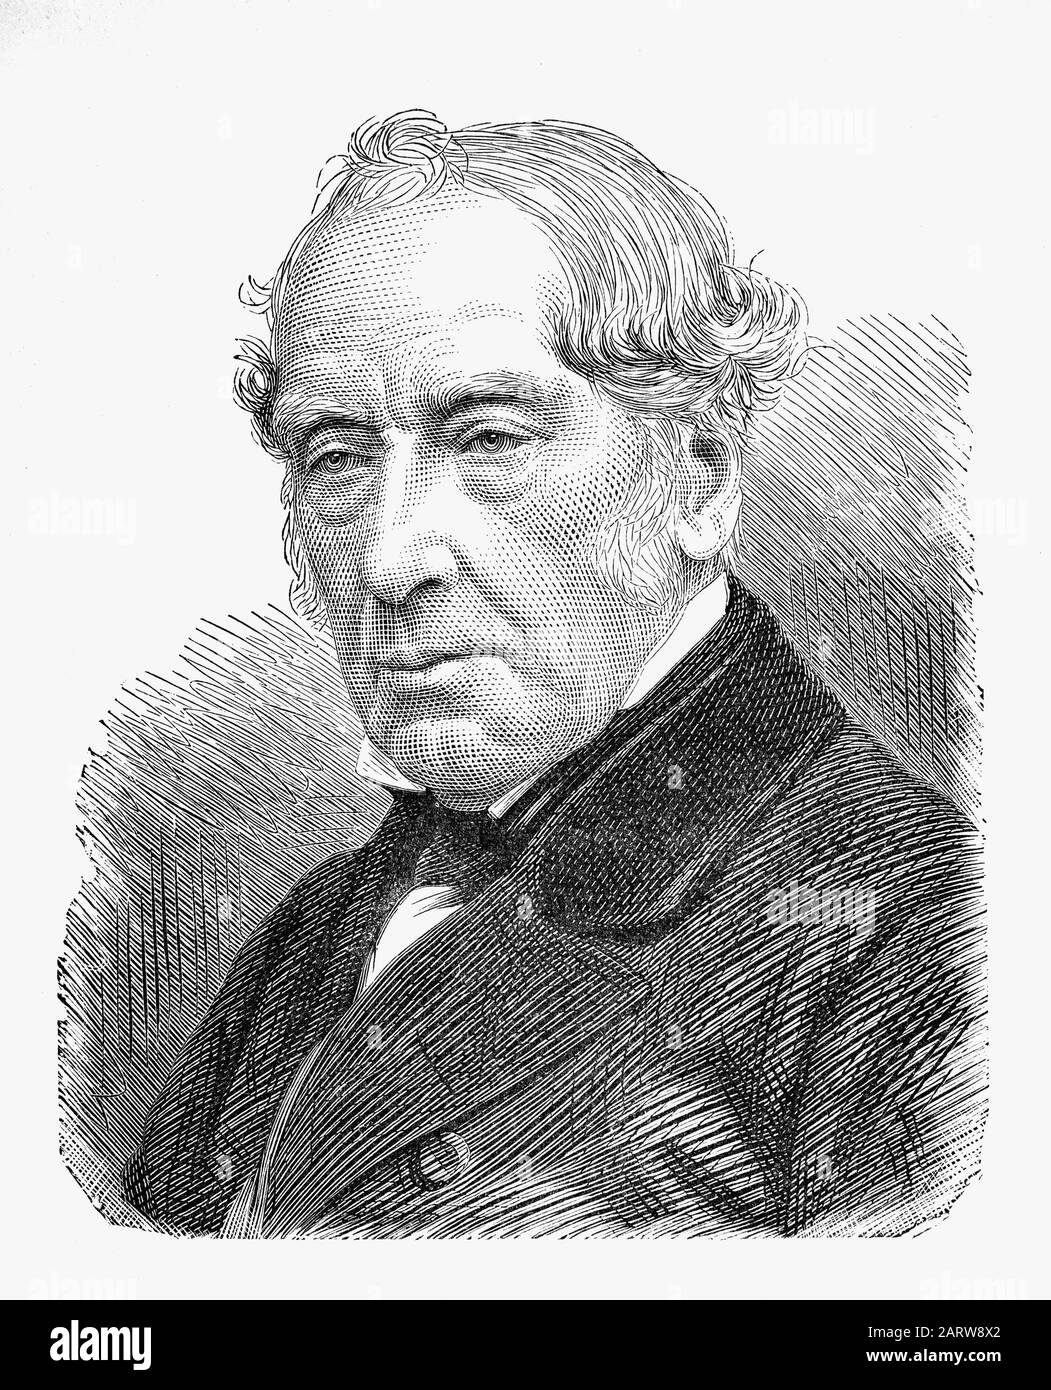 Sir William Fairbairn (1789-1874) était ingénieur civil écossais, ingénieur de construction et constructeur de navires qui succède à George Stephenson et Robert Stephenson pour devenir le troisième président de l'institution of Mechanical Engineers en 1854. Banque D'Images